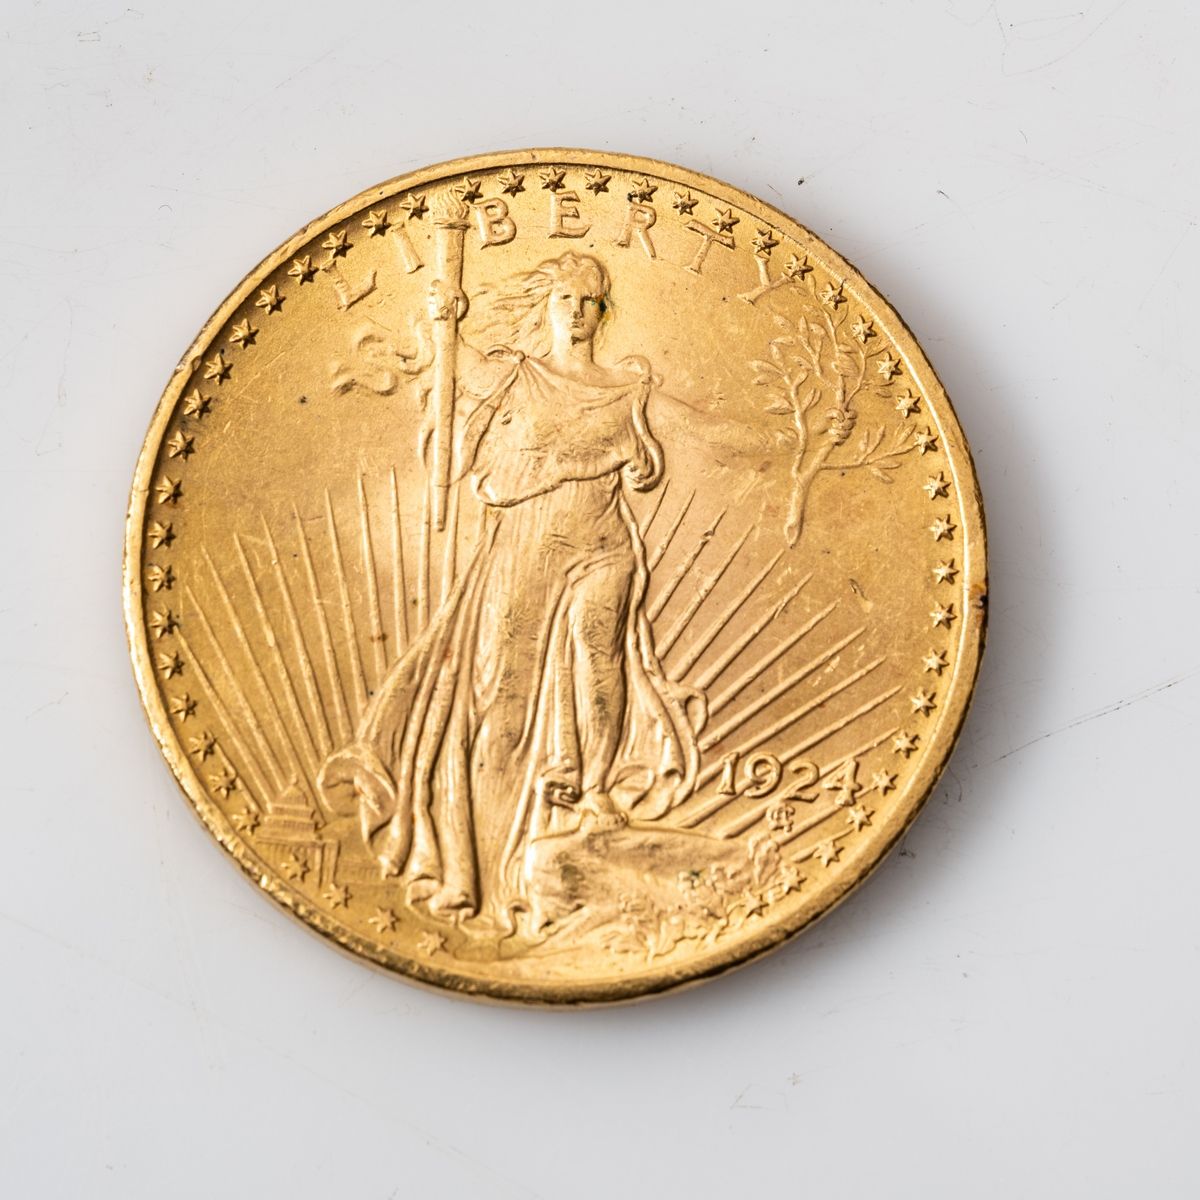 Null 20-Dollar-Goldmünze "Saint-Gaudens - Double Eagle" mit Währung - 1924

Gewi&hellip;